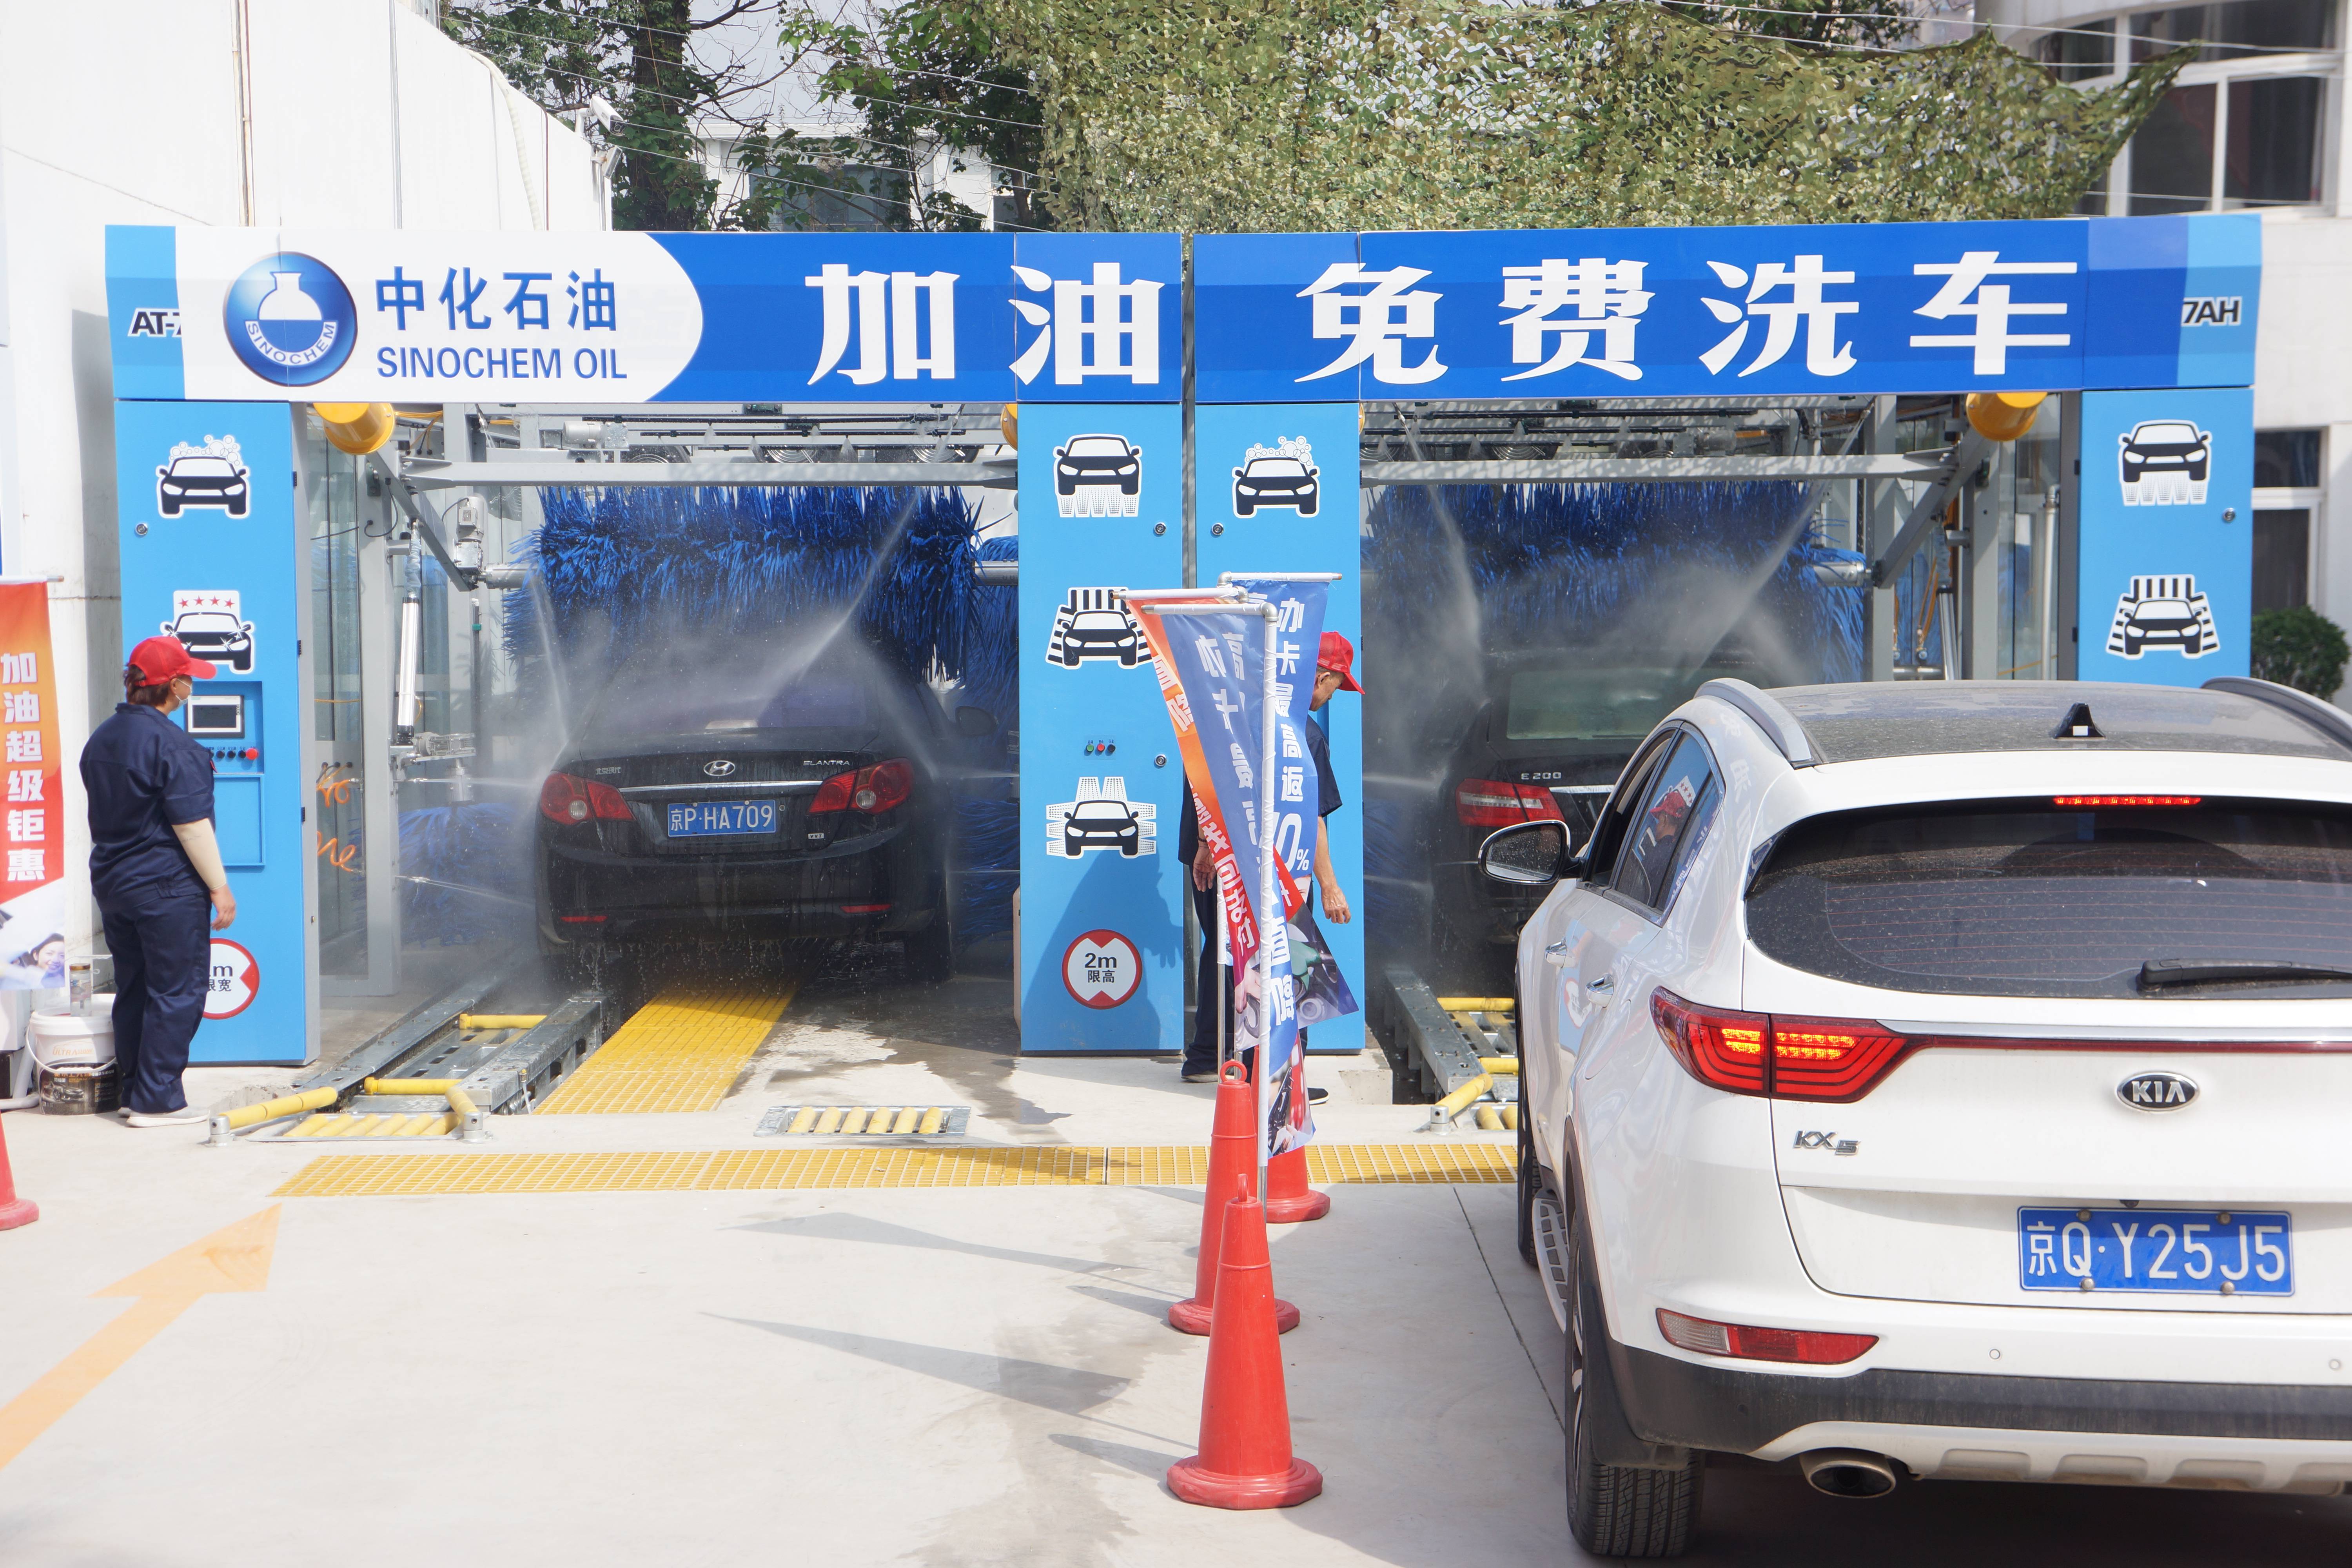 春节6元洗车!24小时营业的自助洗车店,就在廉江!